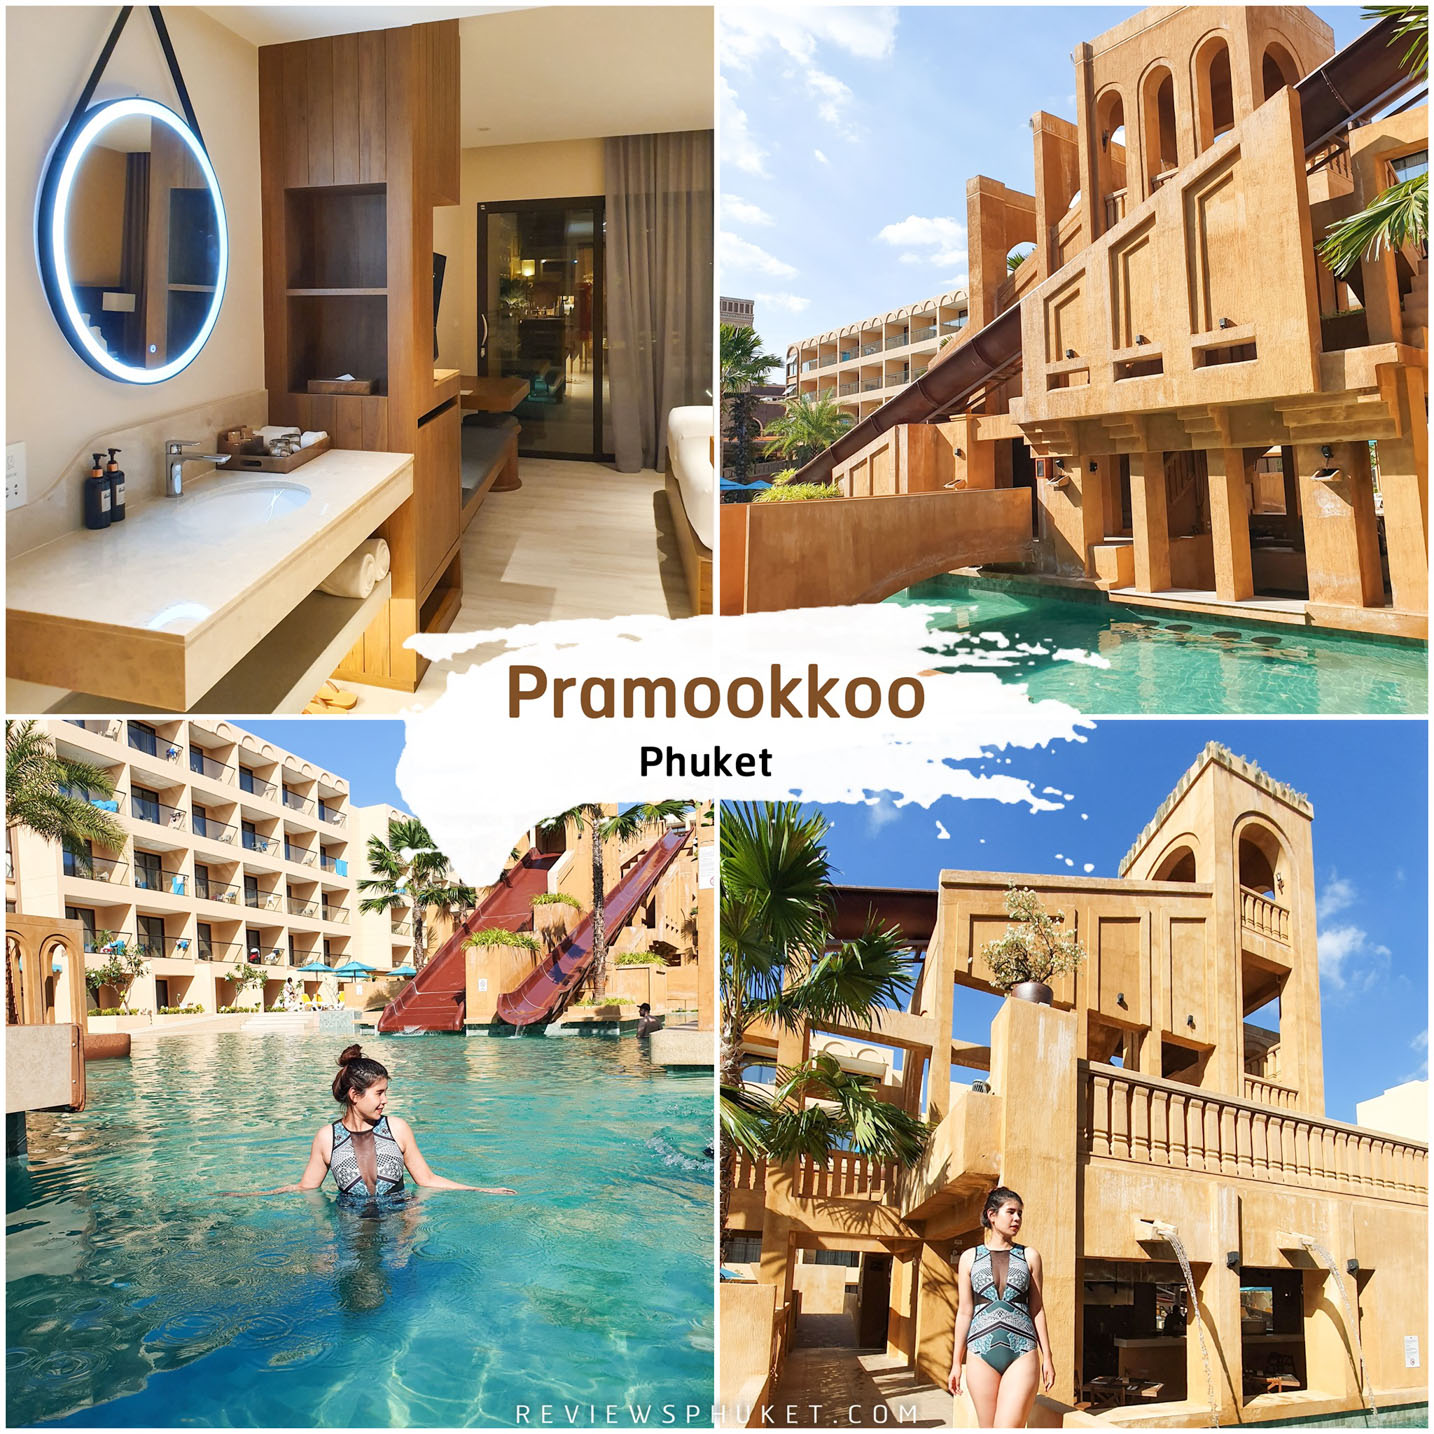 ประมุกโก้ รีสอร์ท Pamookkoo Resort ที่พักภูเก็ตสุดสวยกว้างใหญ่ด้วยสถาปัตยกรรมแนวเมโสโปเตเมีย